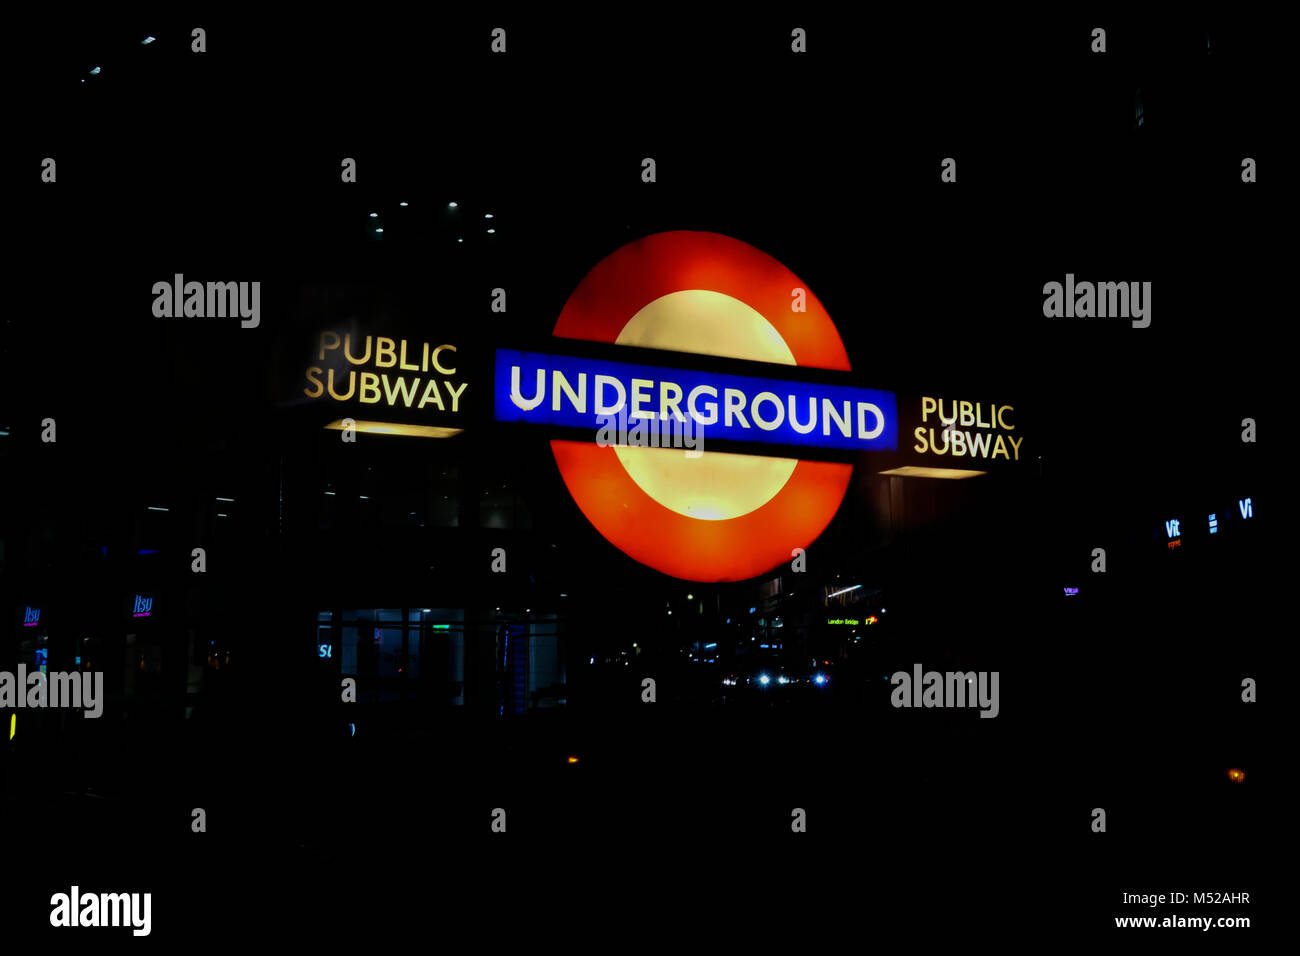 Underground sign in dark in London Stock Photo